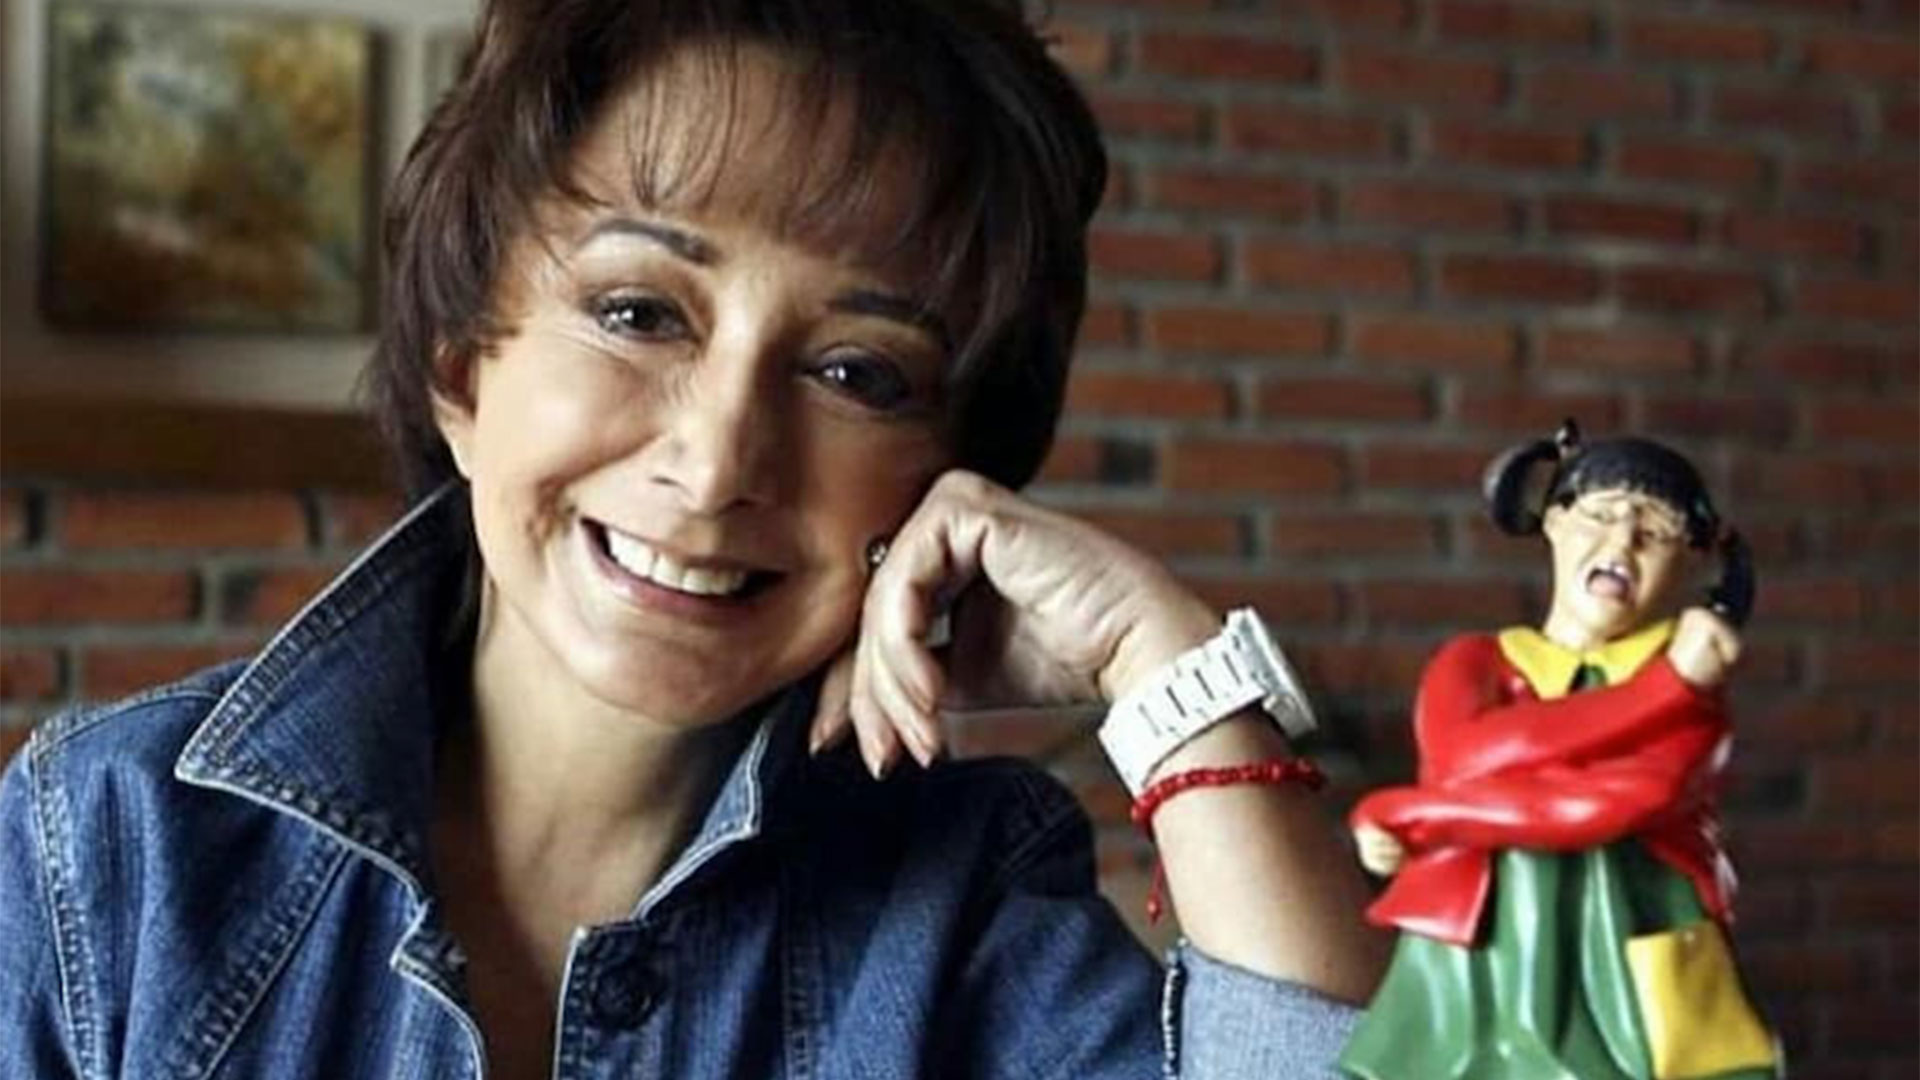 Fue hace siete años que María Antonieta anunció su triunfo legal, aunque nunca recuperó su amistad con Chespirito